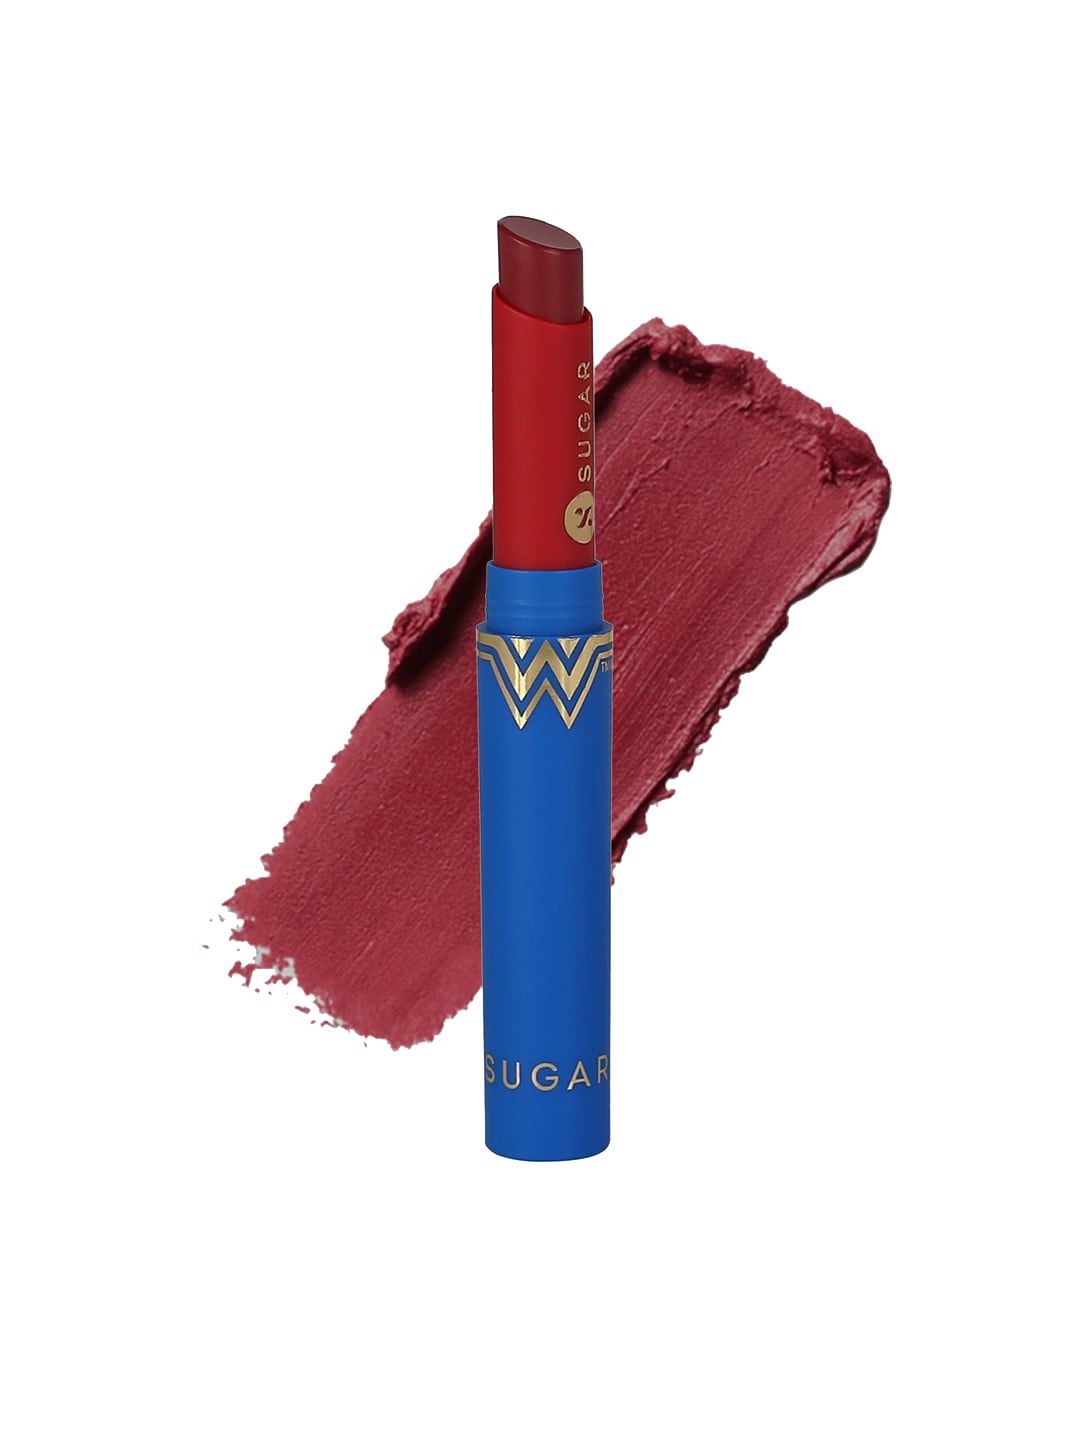 SUGAR Wonder Woman Creamy Matte Lipstick  07 Clay Born 2g Price in India